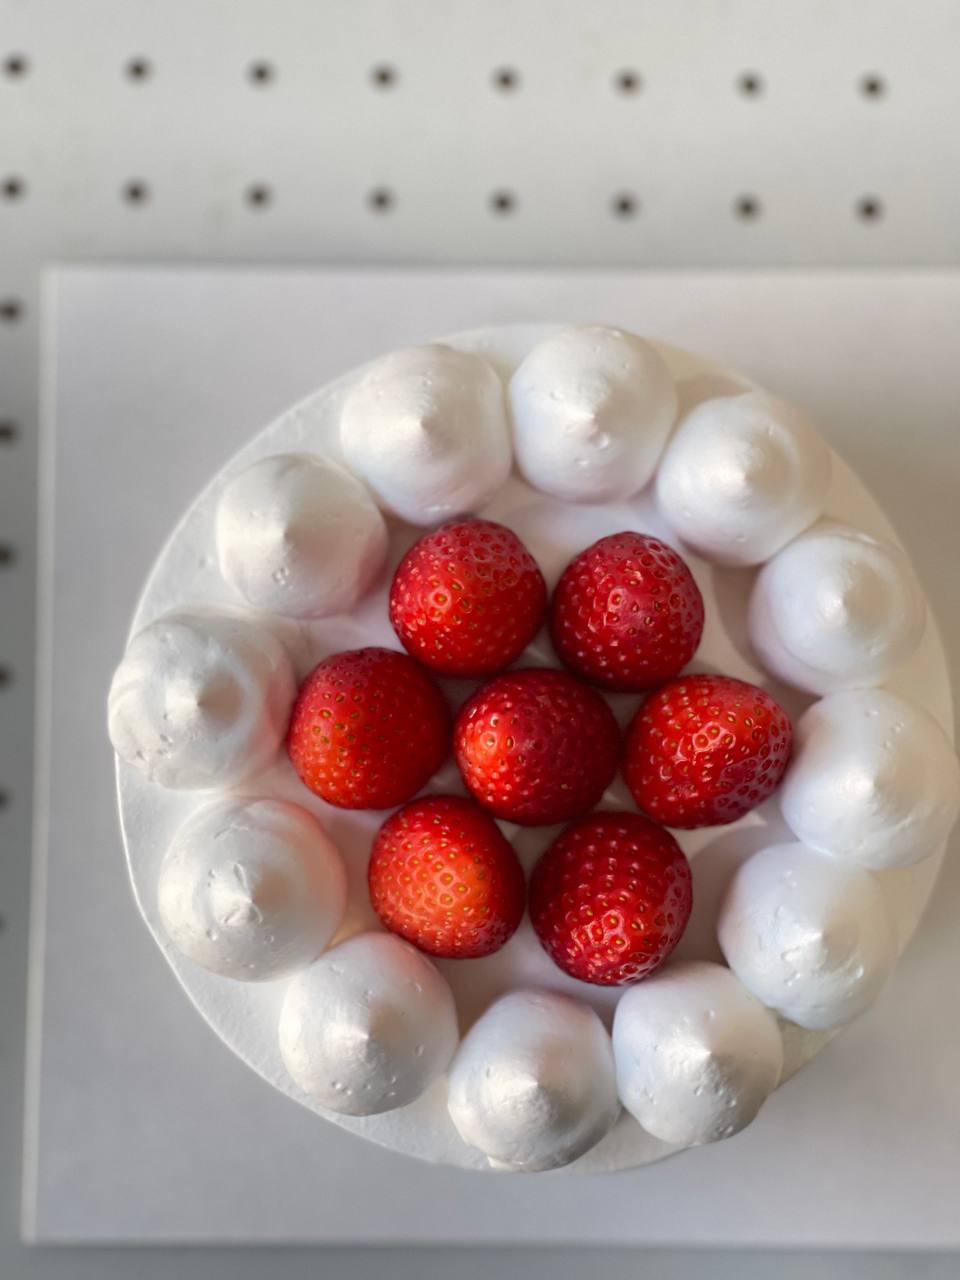 Korean Cake Series - Sweet Ttalgi (Strawberry)